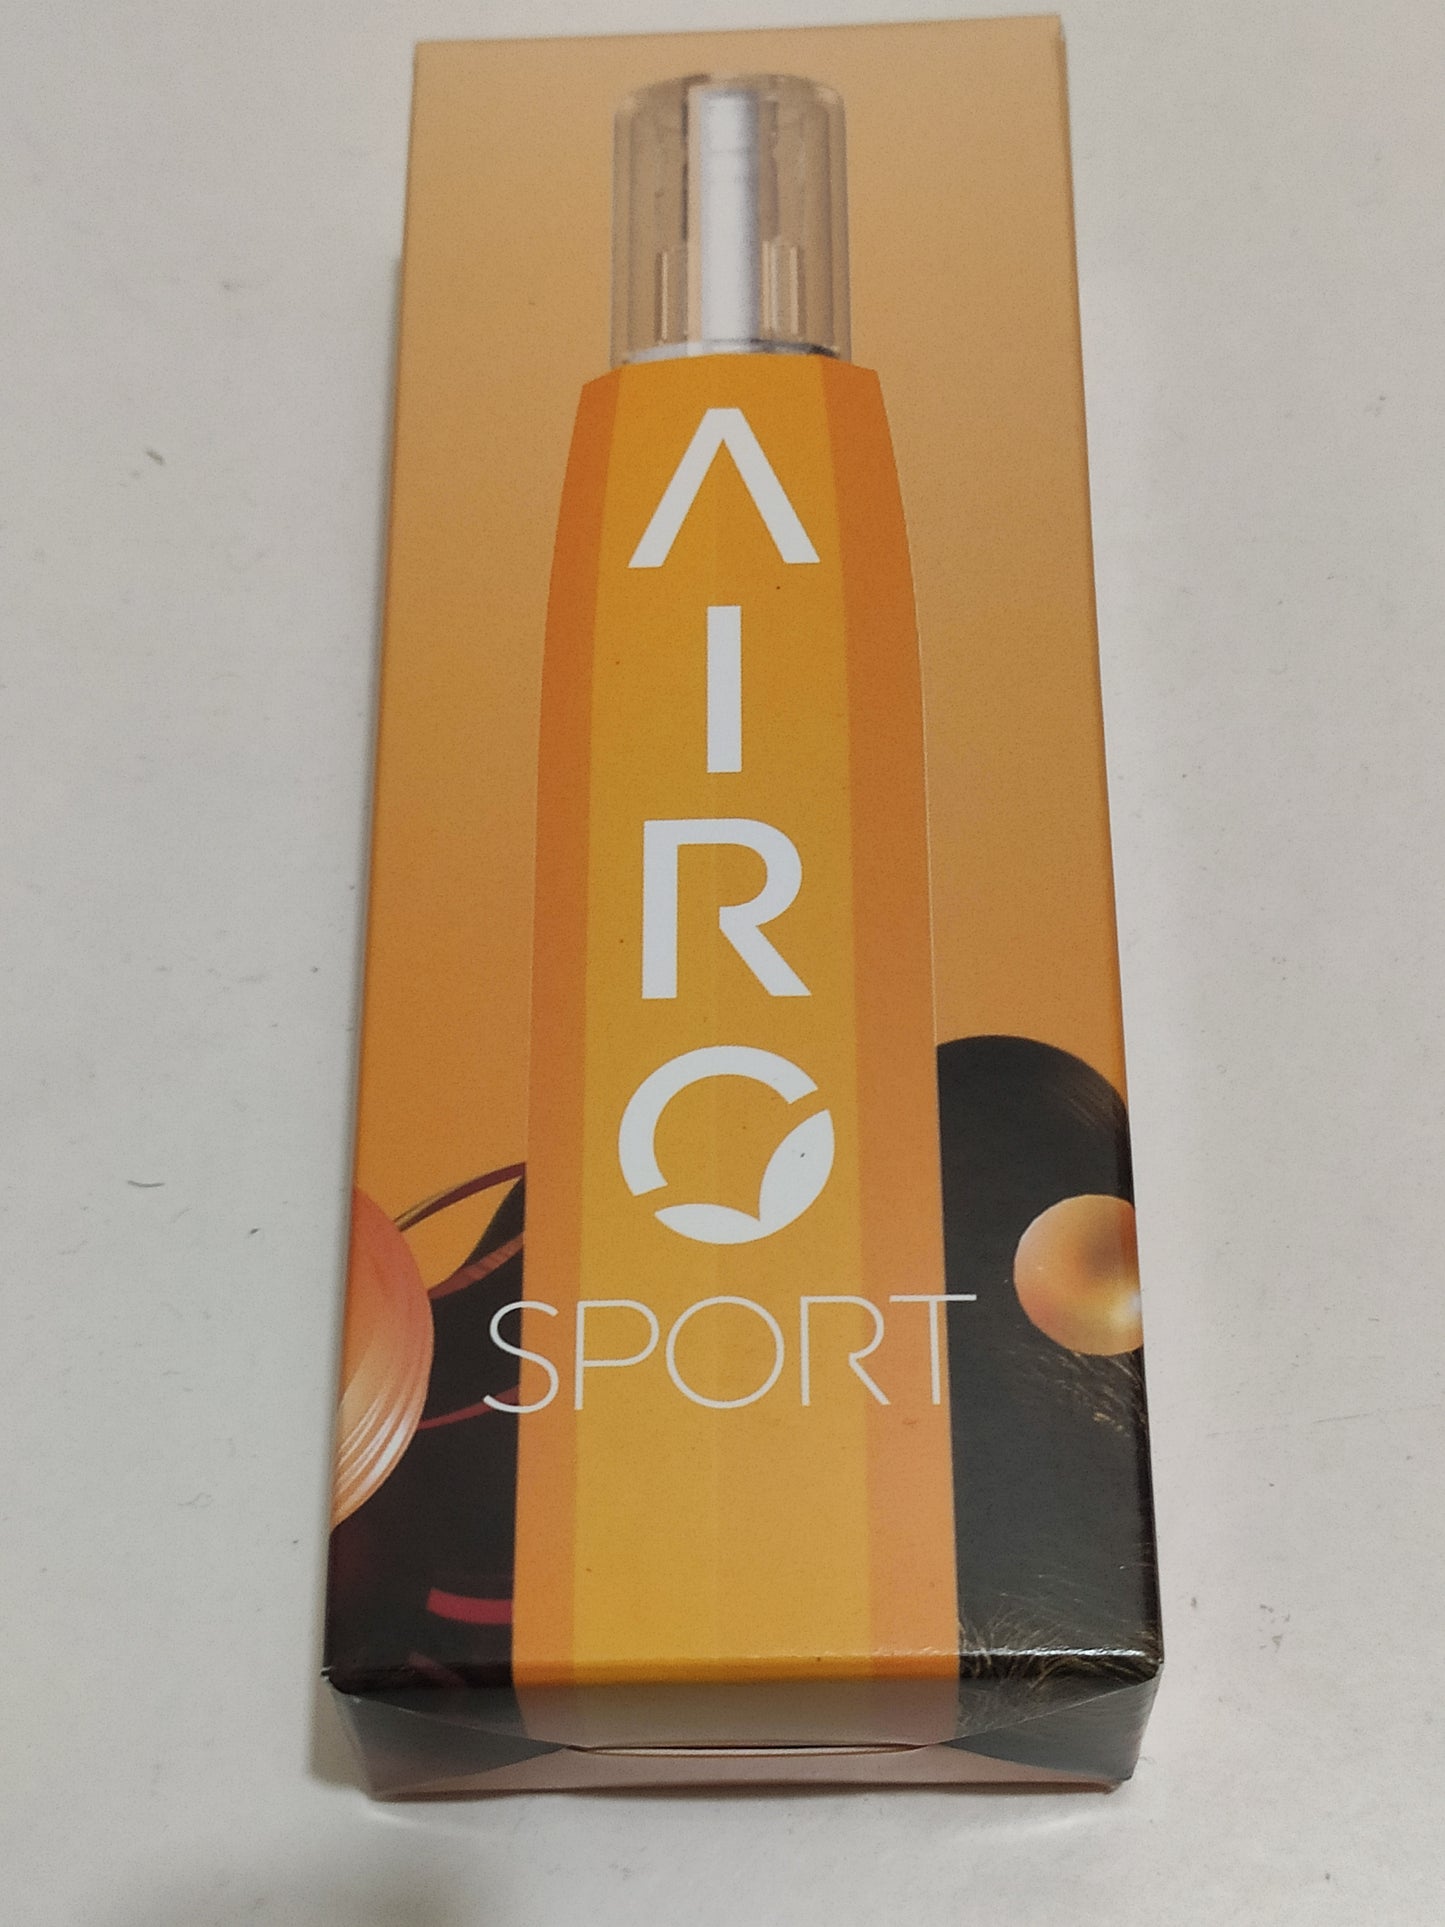 Airopro Indigopro Indigo Pro Sunburst Orange AiroSport Color Pen Polycarbonate Body

Battery- FREE SHIPPING